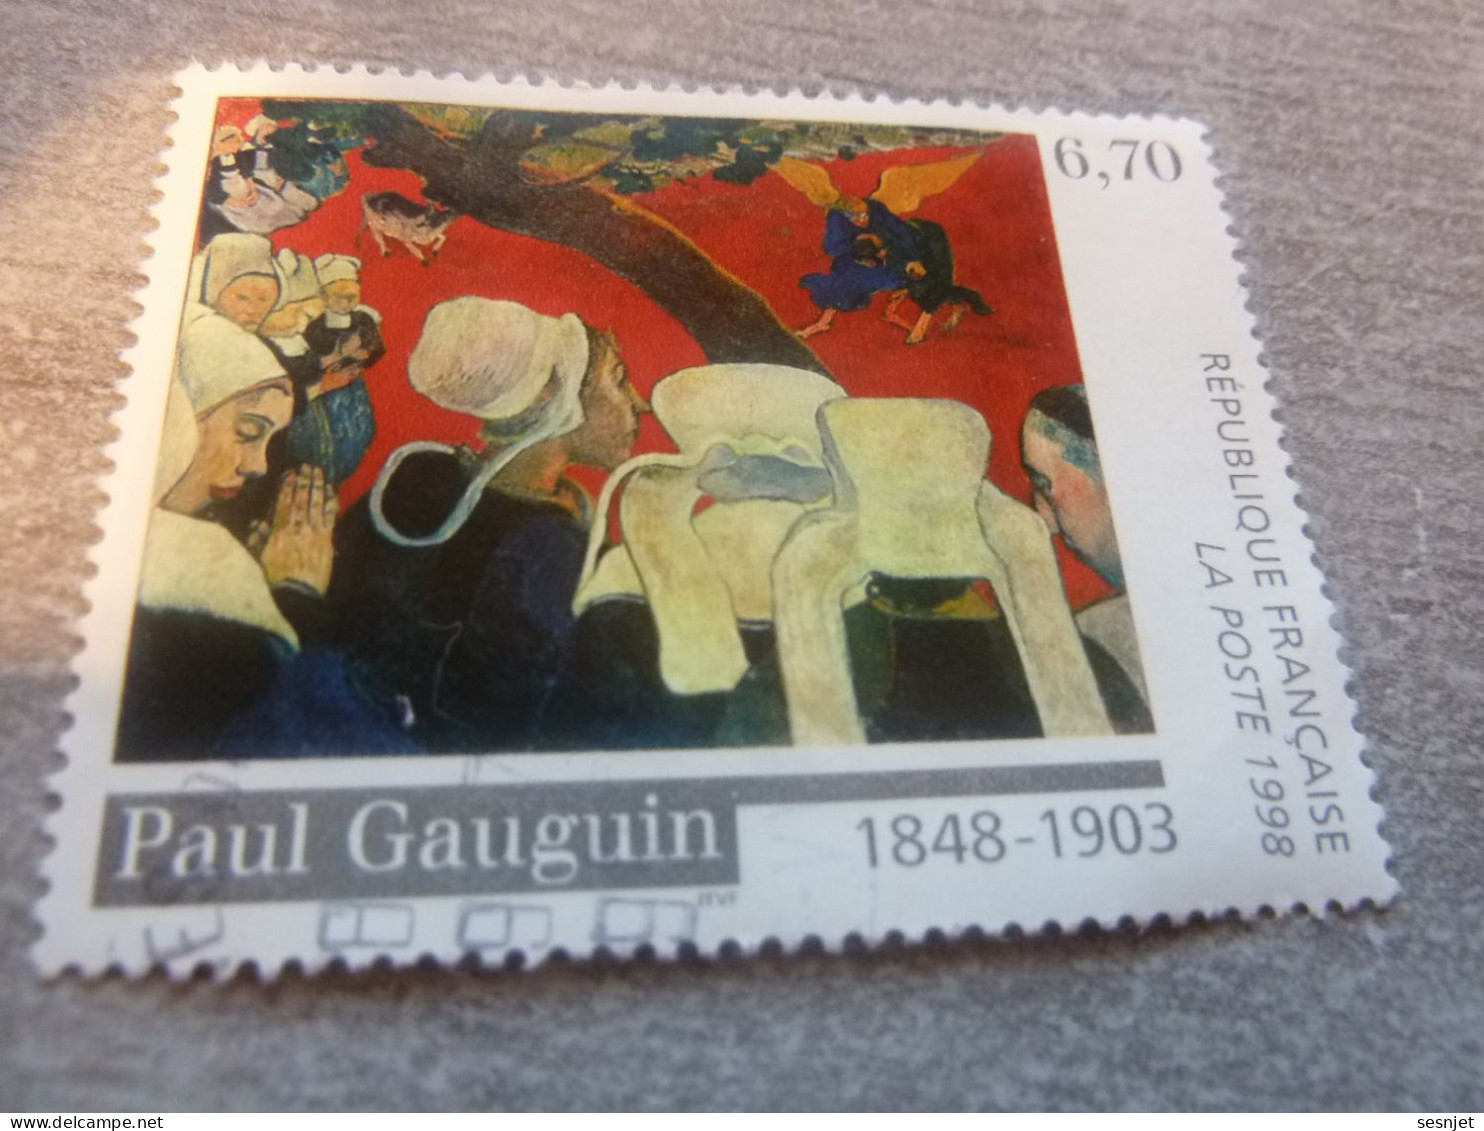 Paul Gauguin (1848-1903) Vision Après Le Sermon - 6f.70 - Yt 3207 - Multicolore - Oblitéré - Année 1998 - - Oblitérés